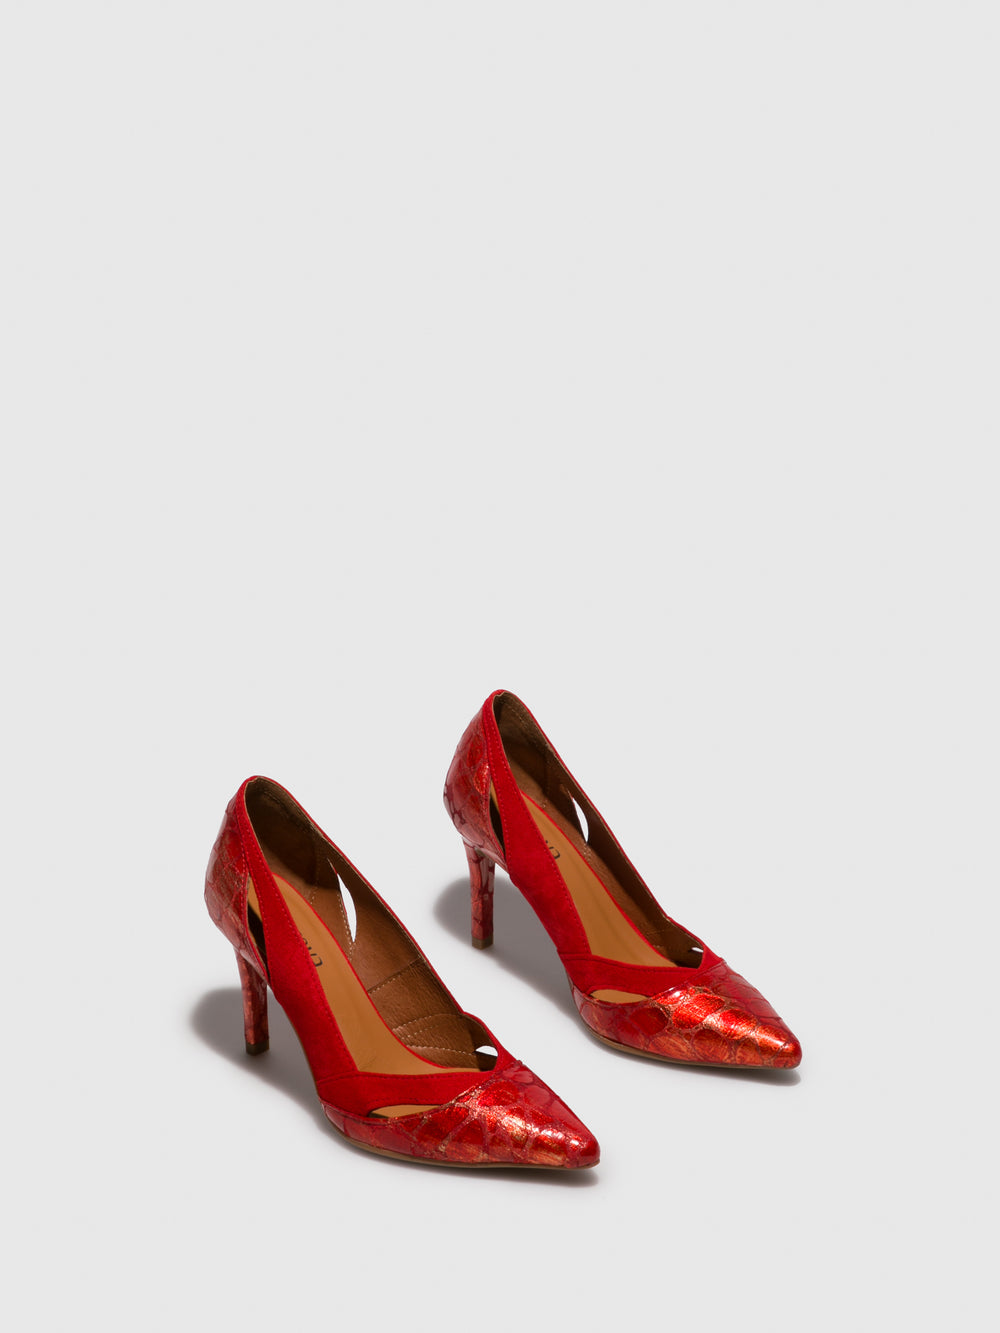 Sapatos Stilettos em Vermelho